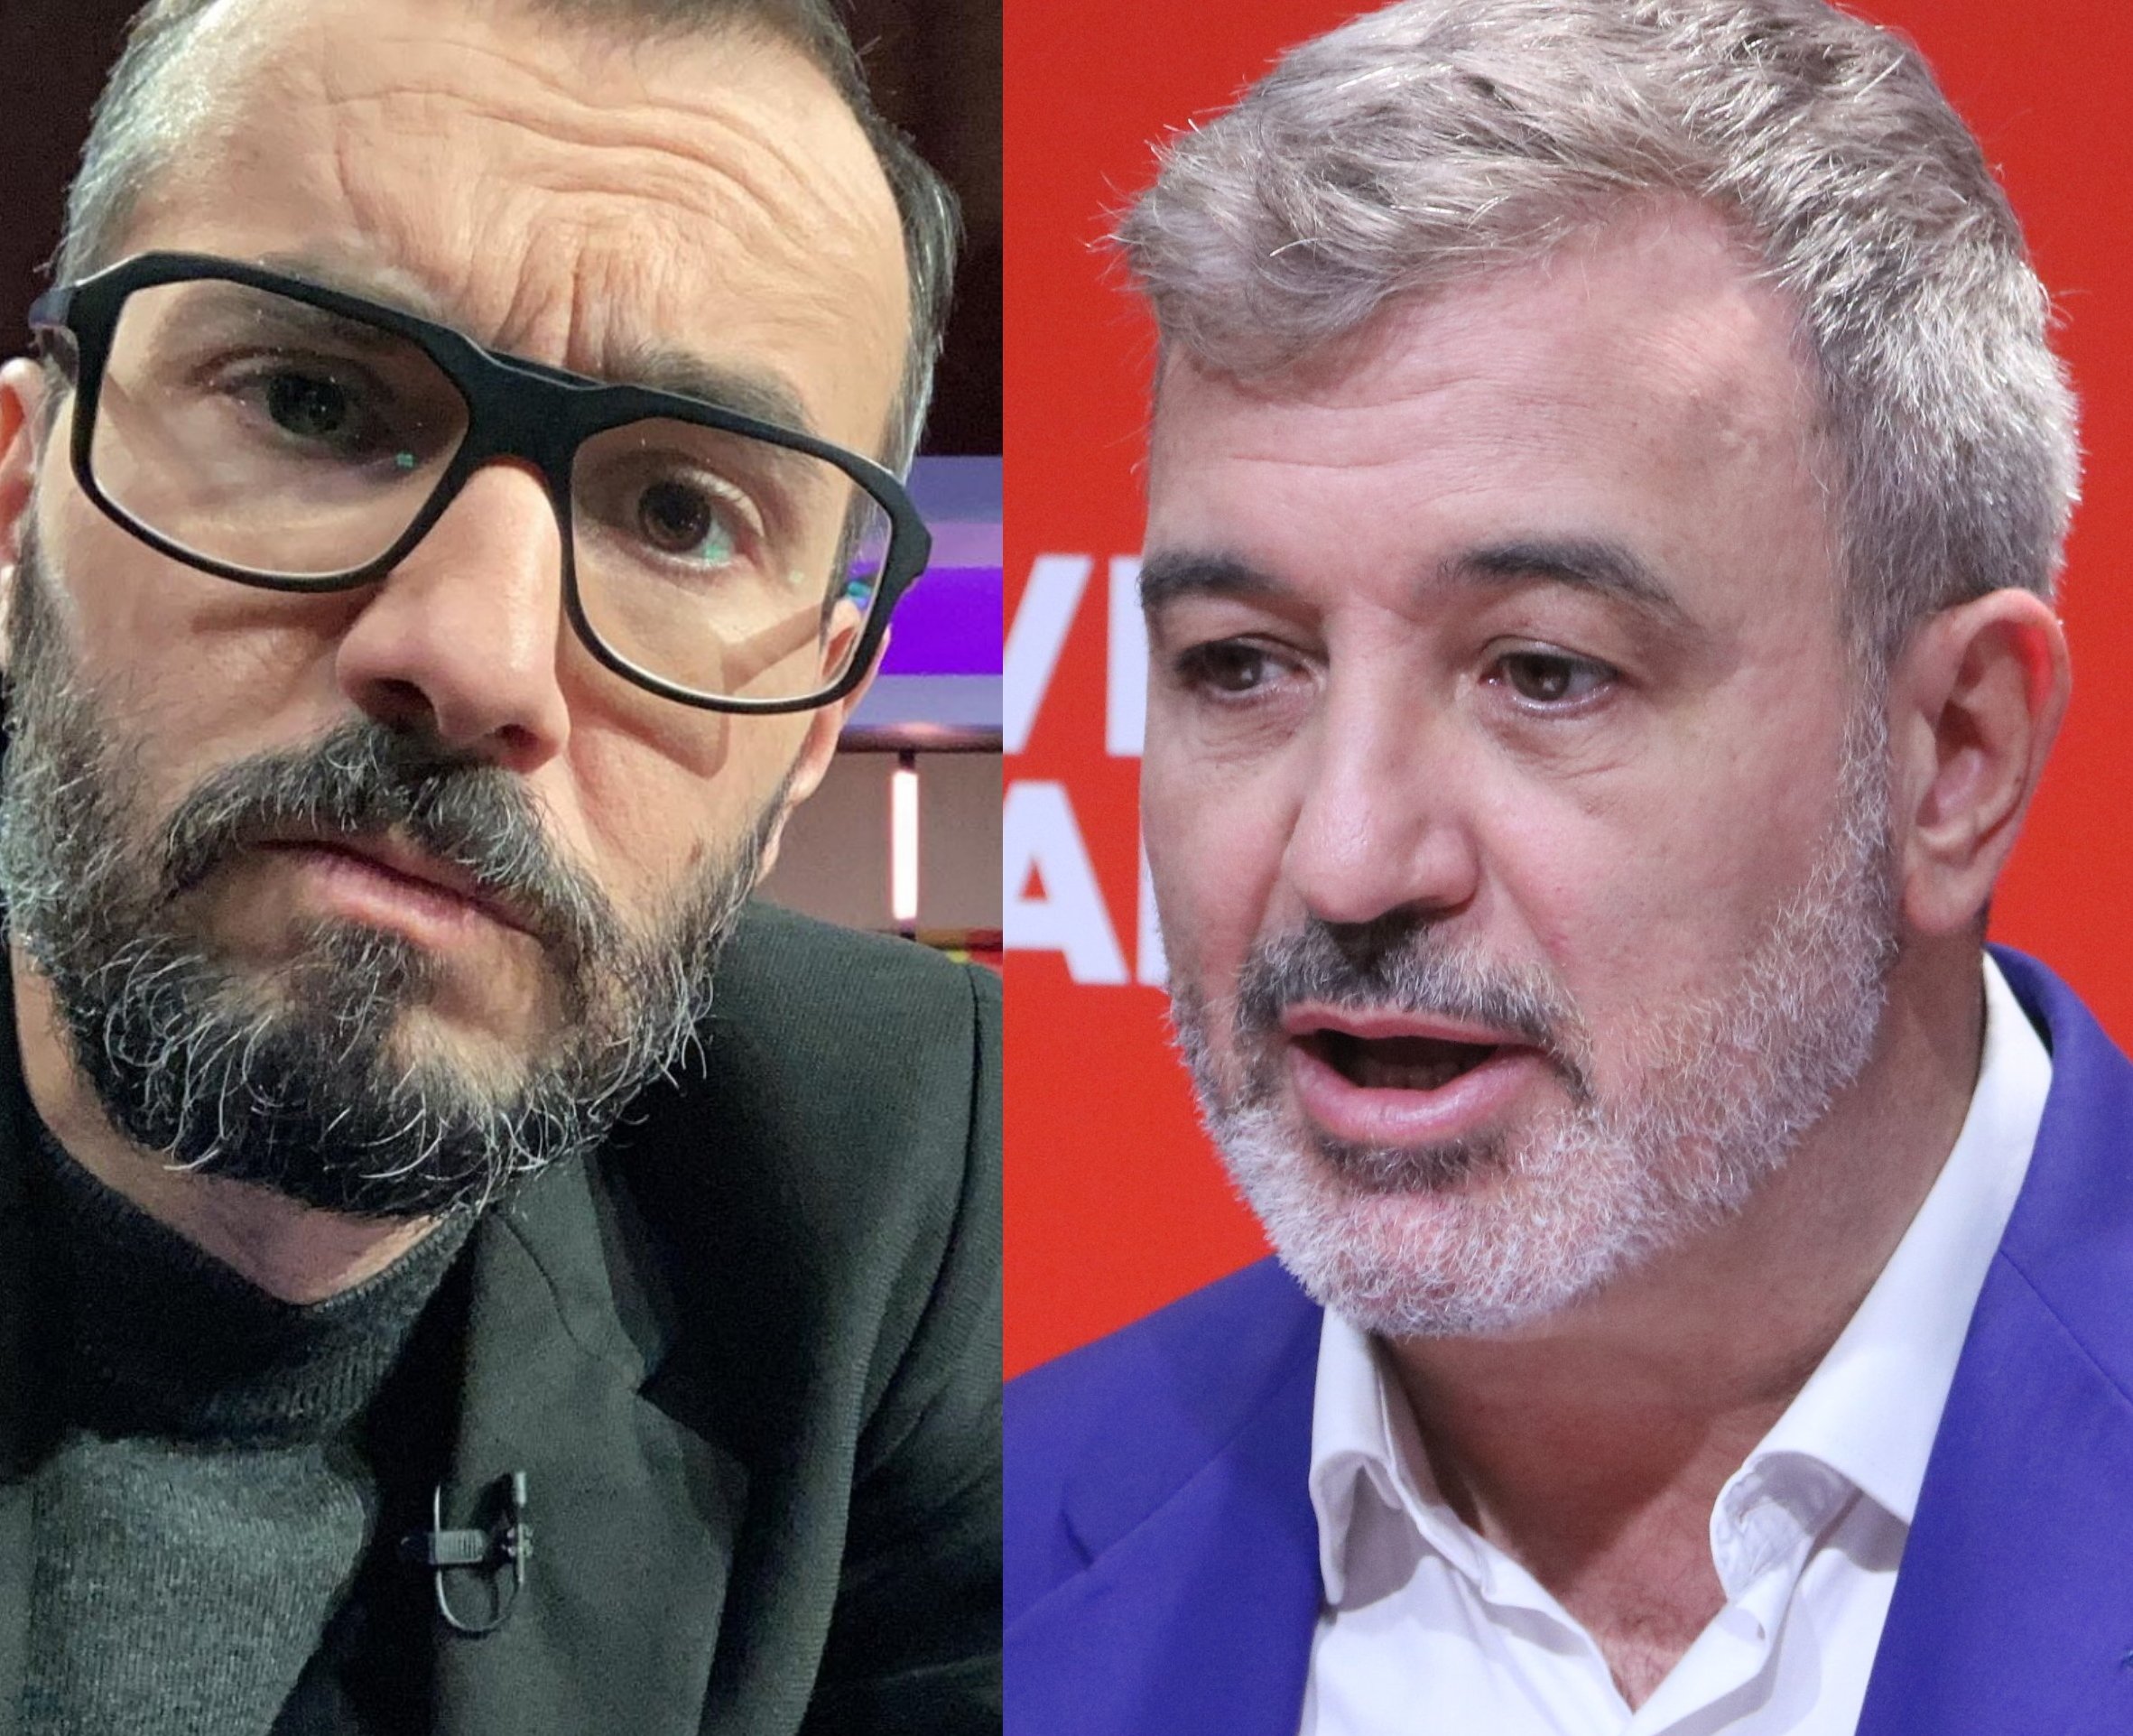 Jair Domínguez ensorra Jaume Collboni pel que ha fet amb el català: "mediocre"